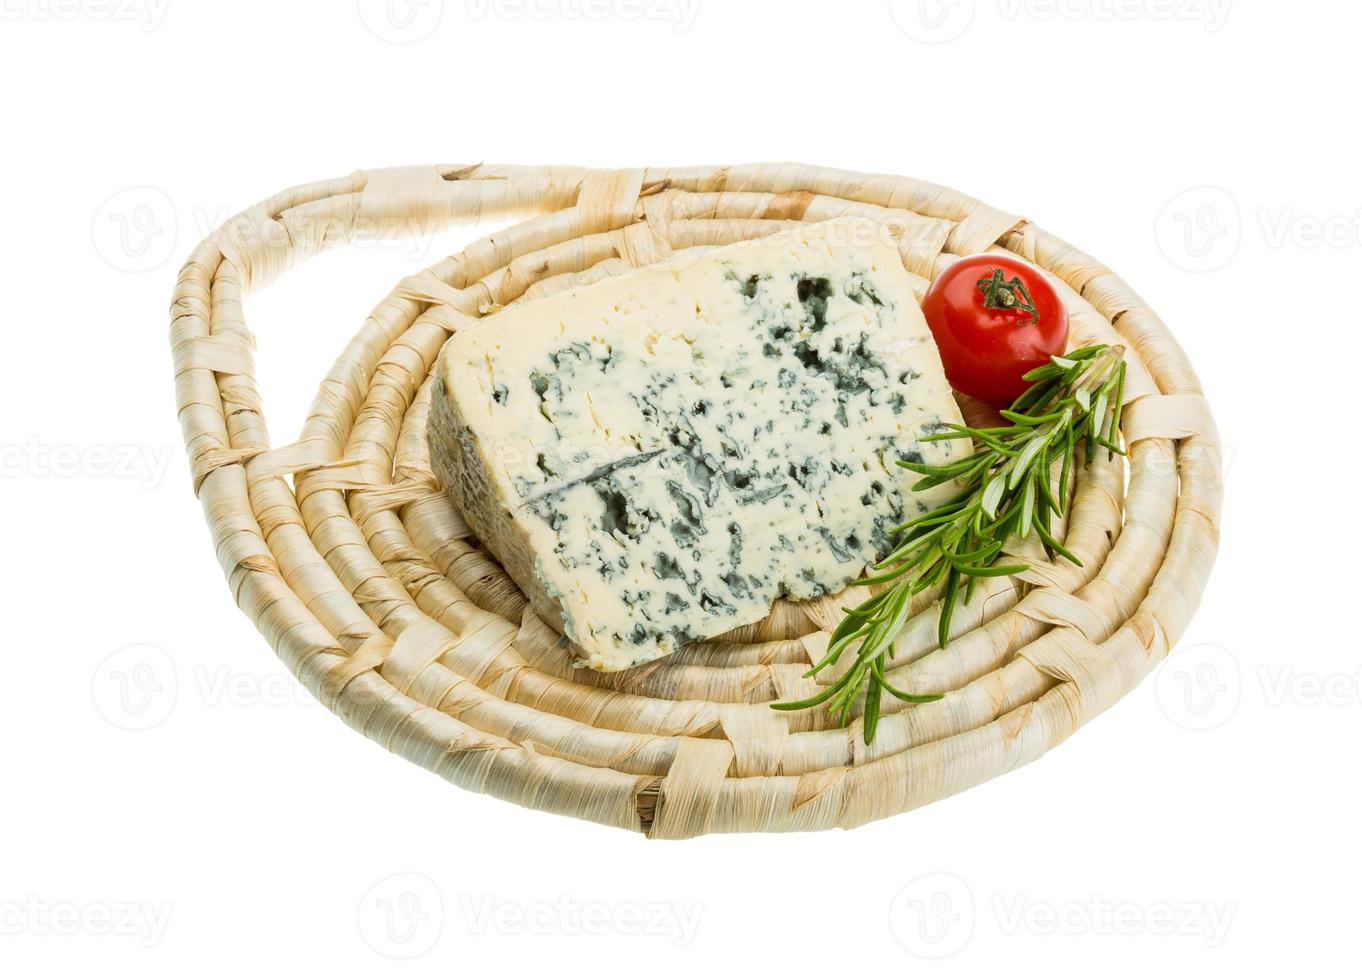 queijo azul a bordo isolado no fundo branco foto